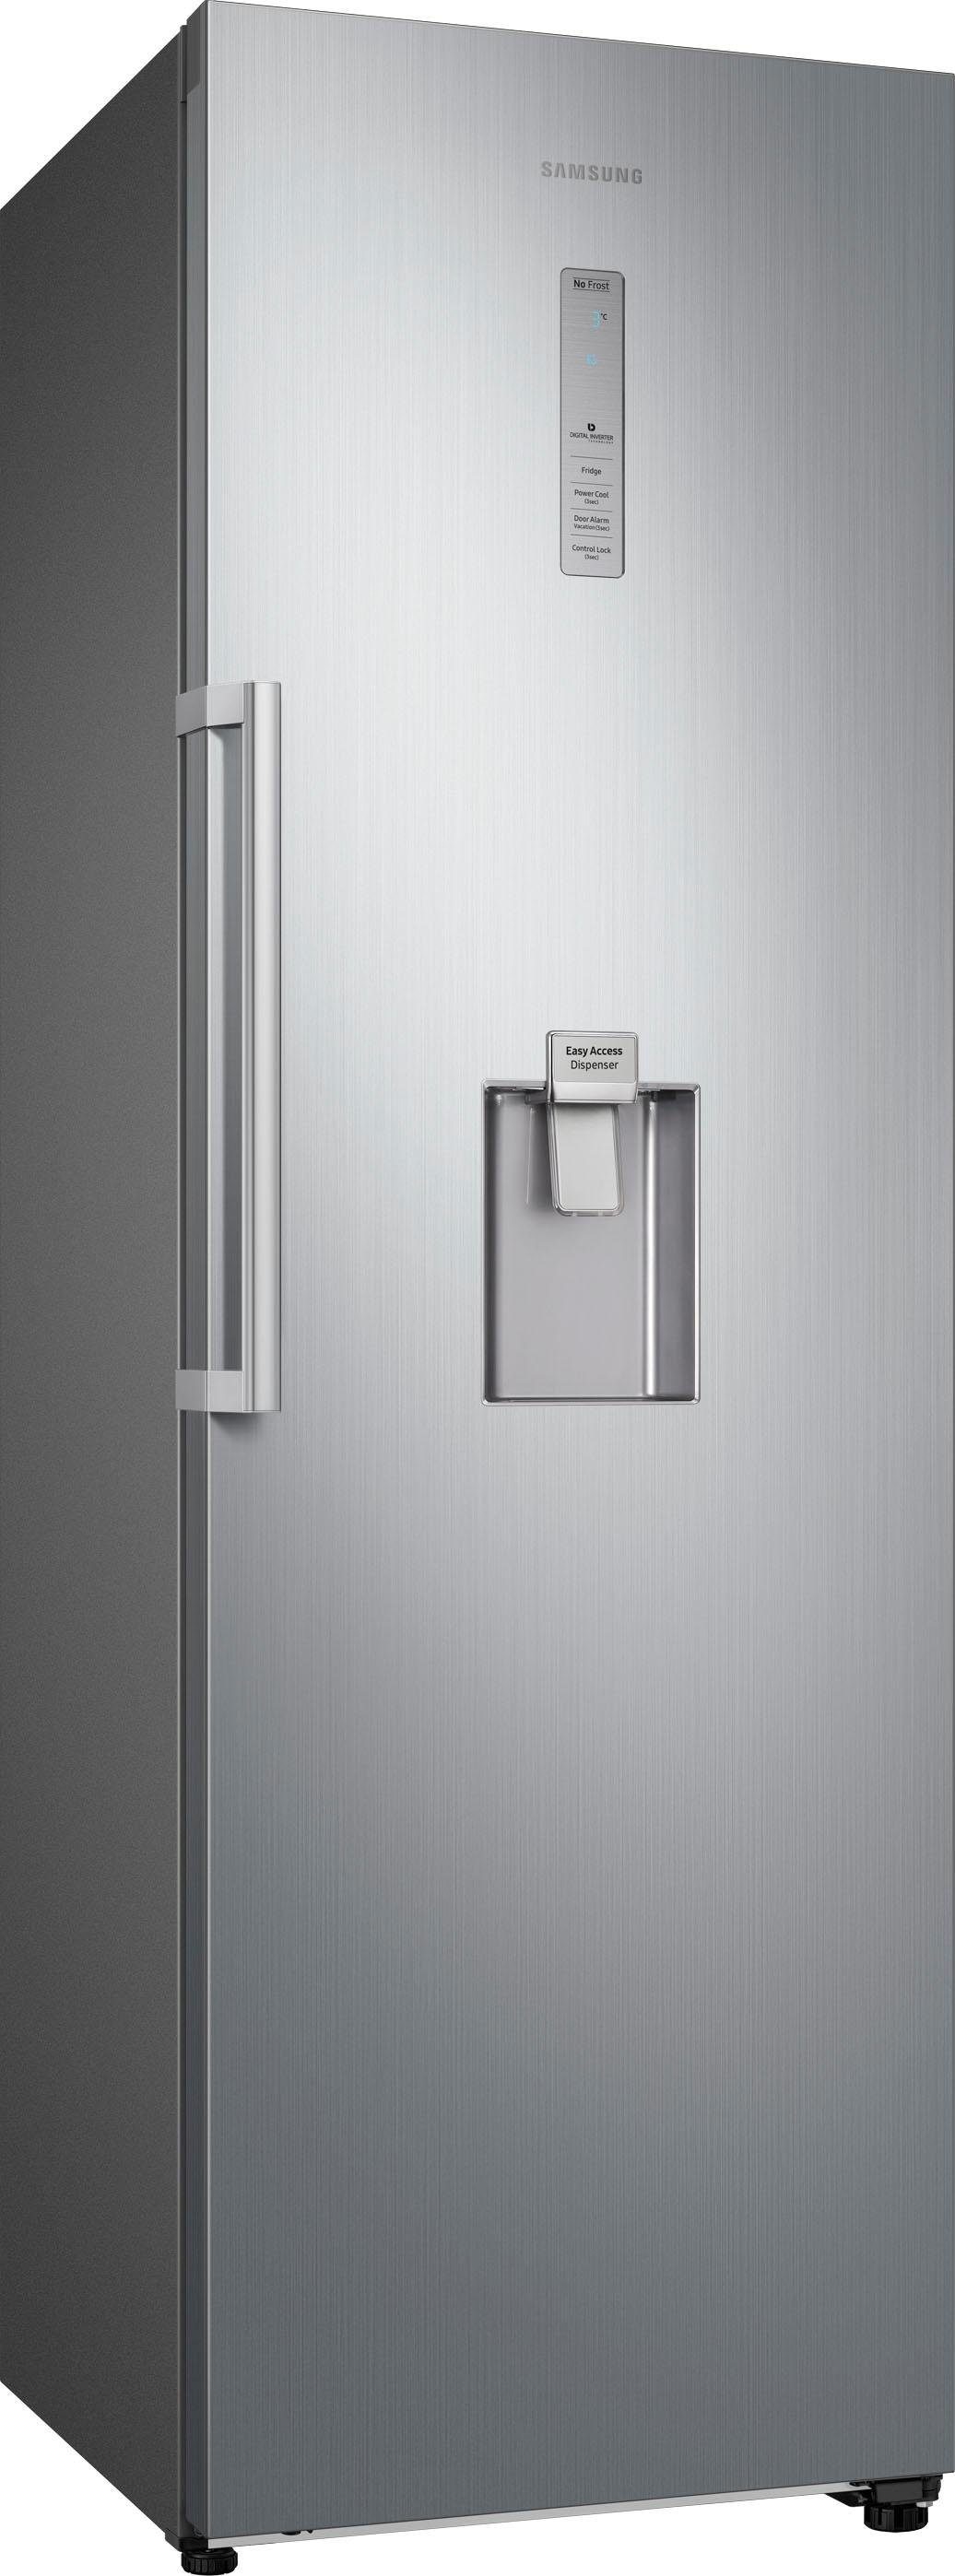 Samsung Vollraumkühlschrank »RR39M7305S9/EG«, RR39M7305S9, 185,3 cm hoch, 59,5 cm breit